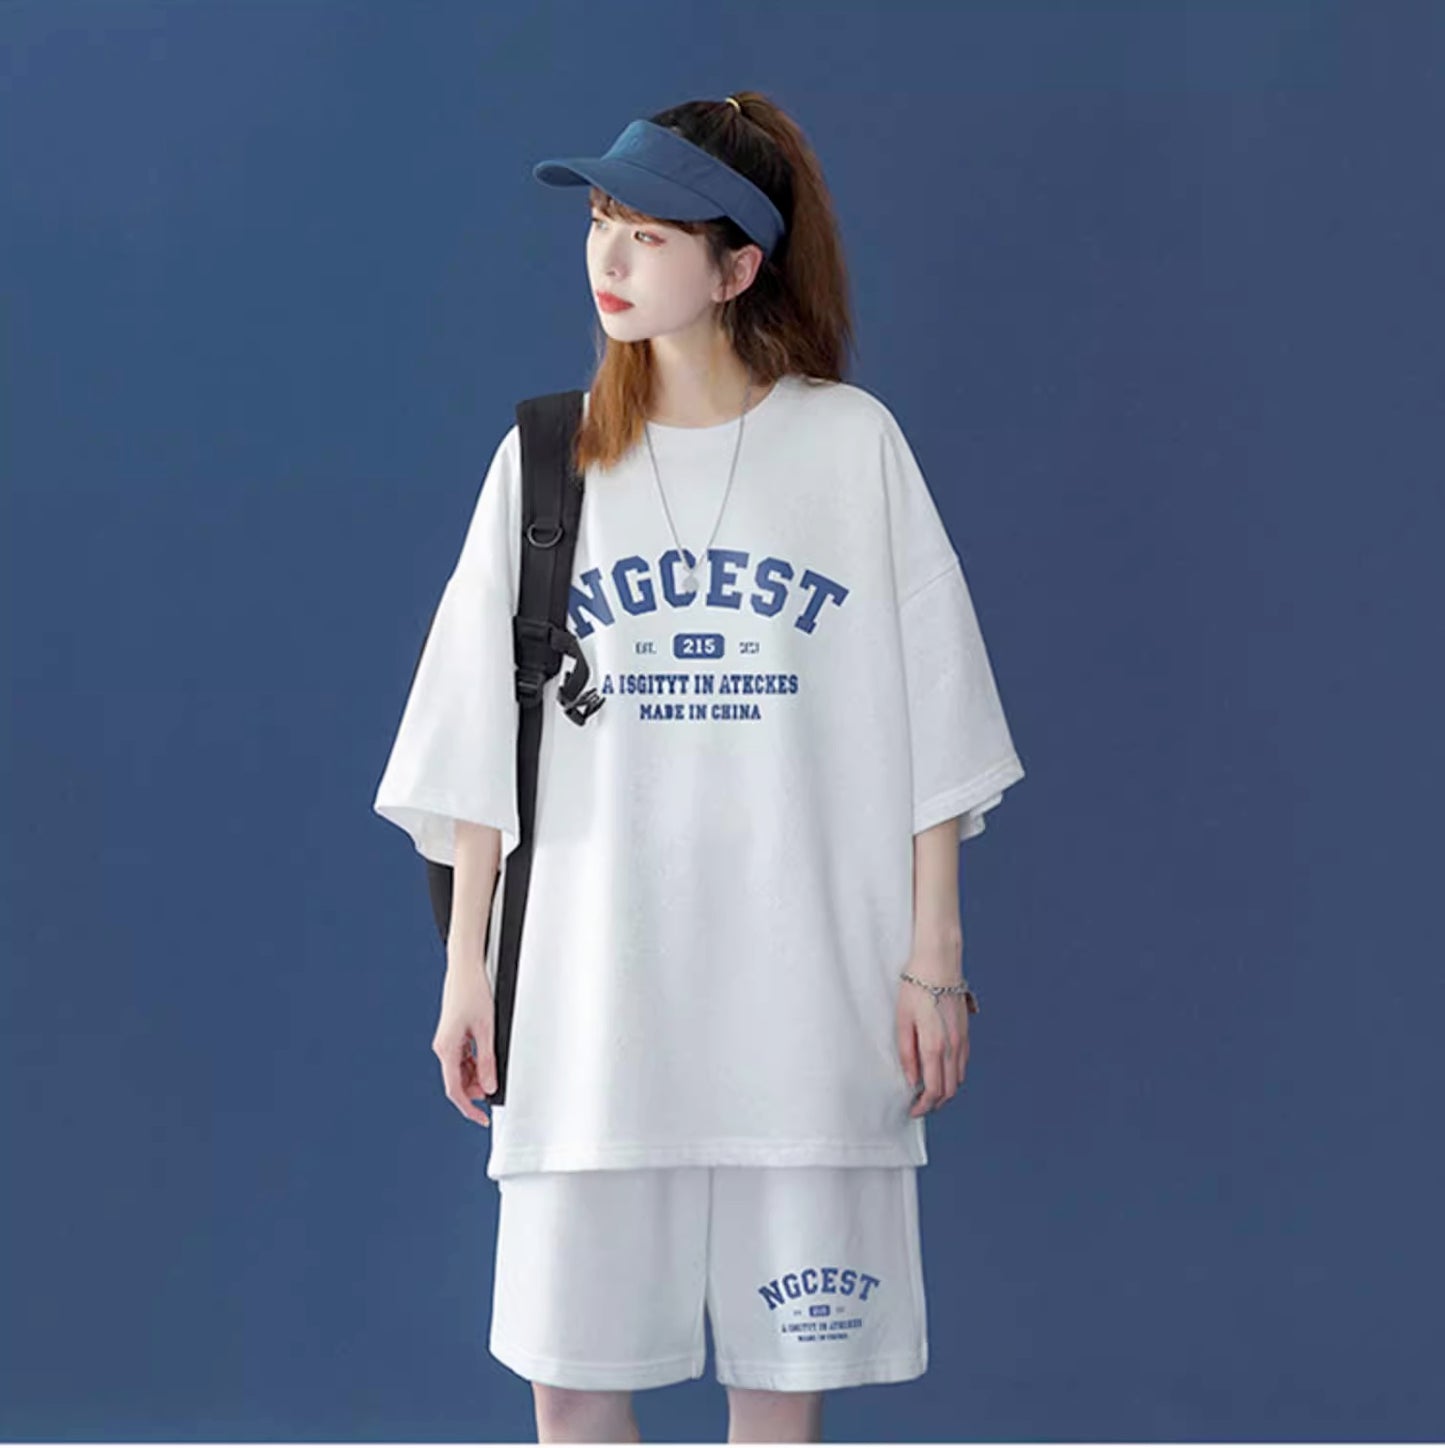 セットアップ レディース Tシャツ ハーフパンツ 上下セット スポーツウェア 韓国 ファッション ビッグシルエット ジャージセット